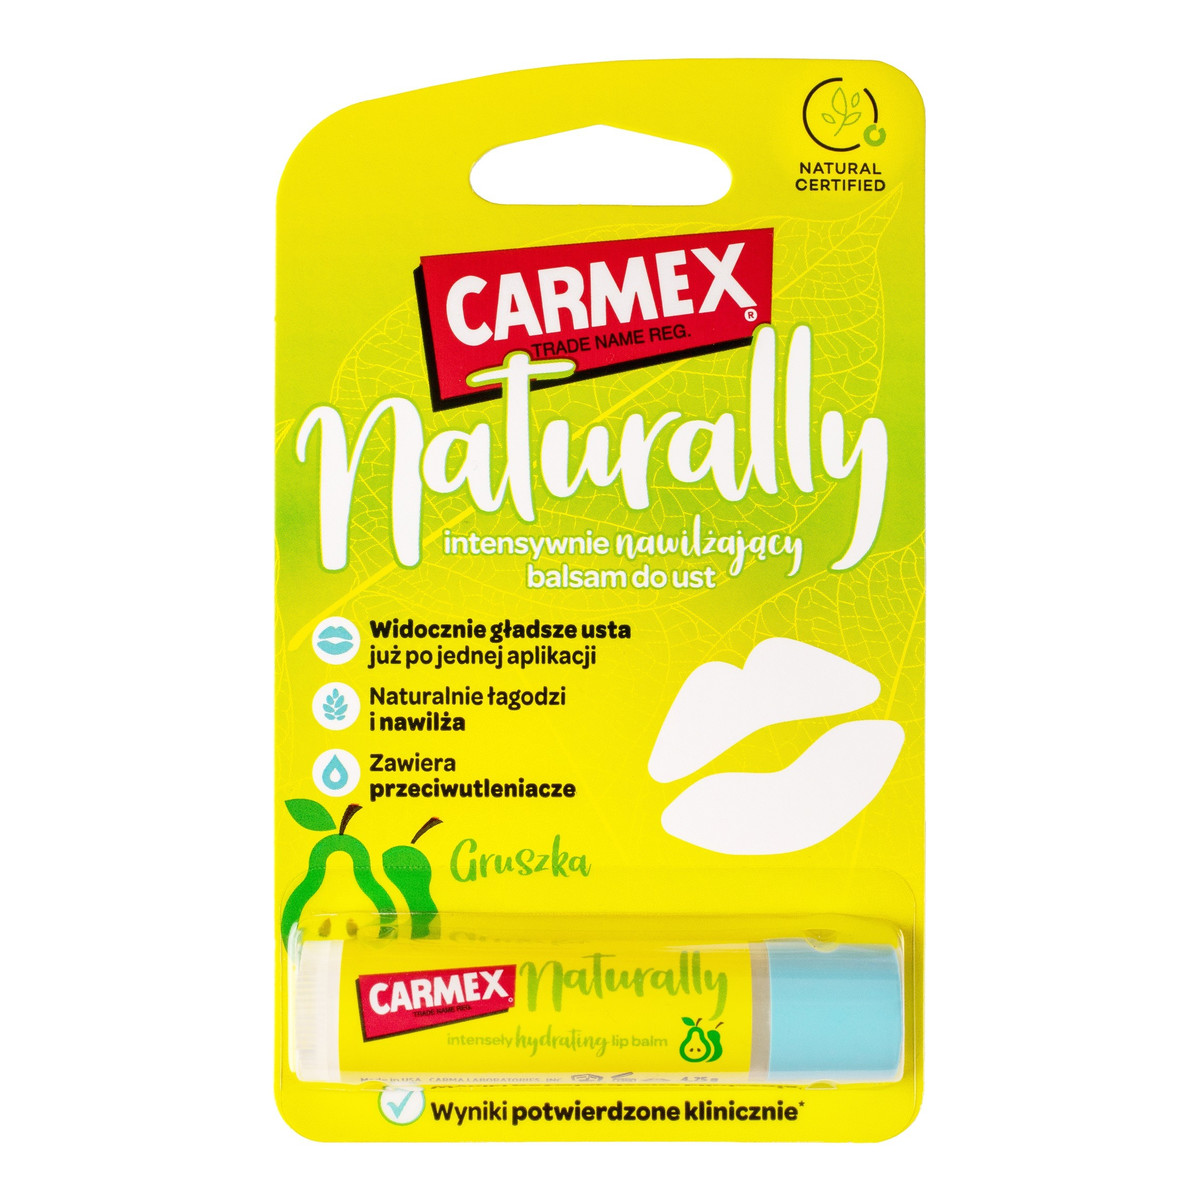 Carmex Naturally Intensywnie Nawilżający Balsam do ust-gruszka 4,25 g 4.25g